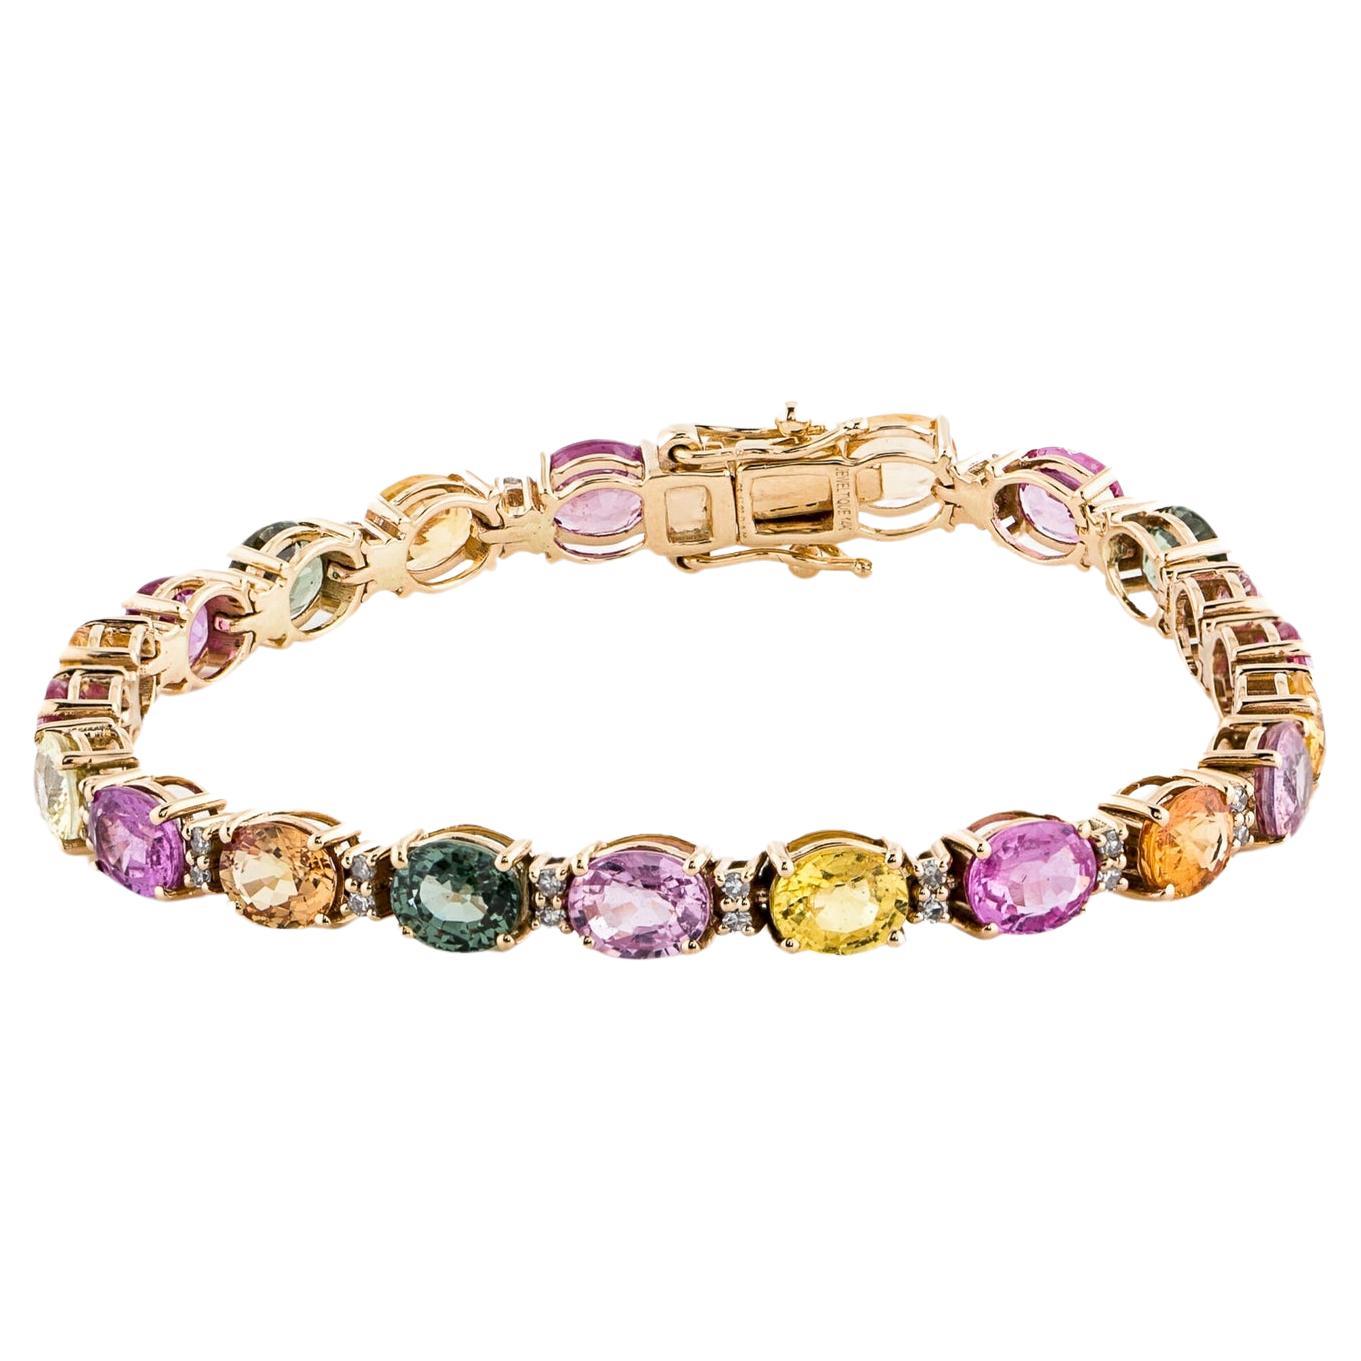 Luxueux bracelet en saphir et diamant 14K - Elegance étincelante, glamour intemporel